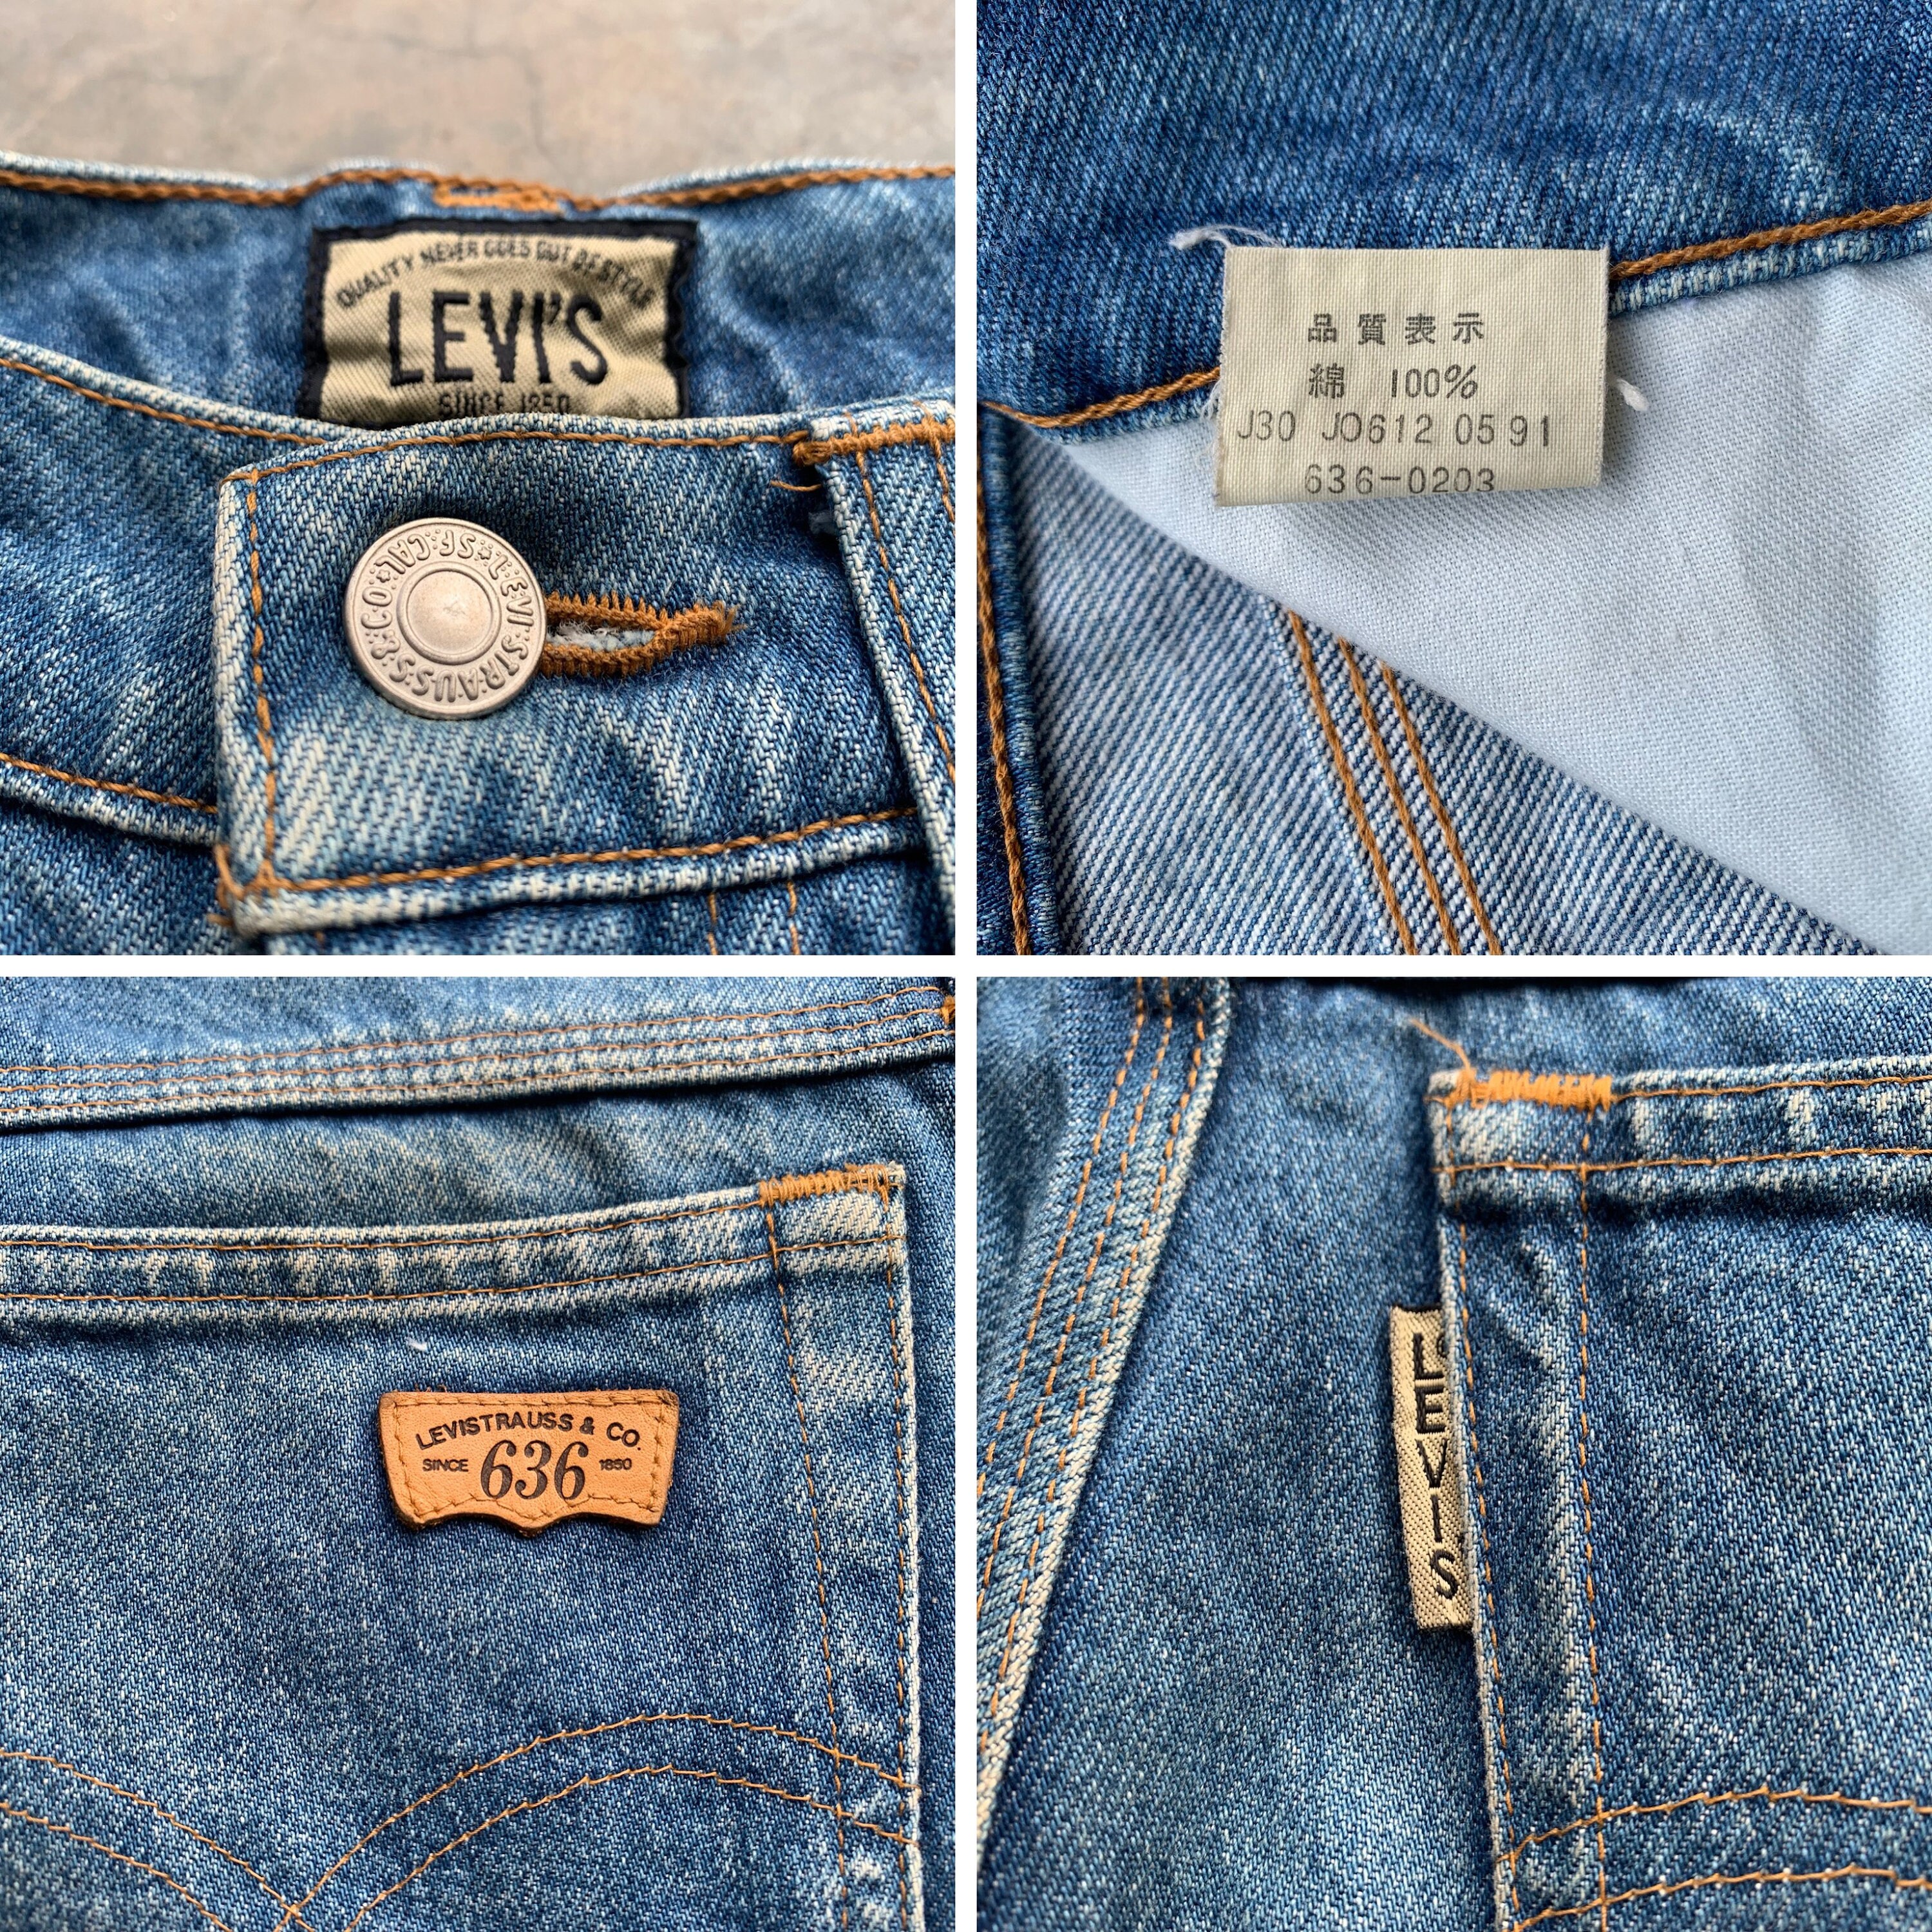 Levis 636 Jeans Vintage Levis 636 Japan Denim Jeans Size - Etsy 日本